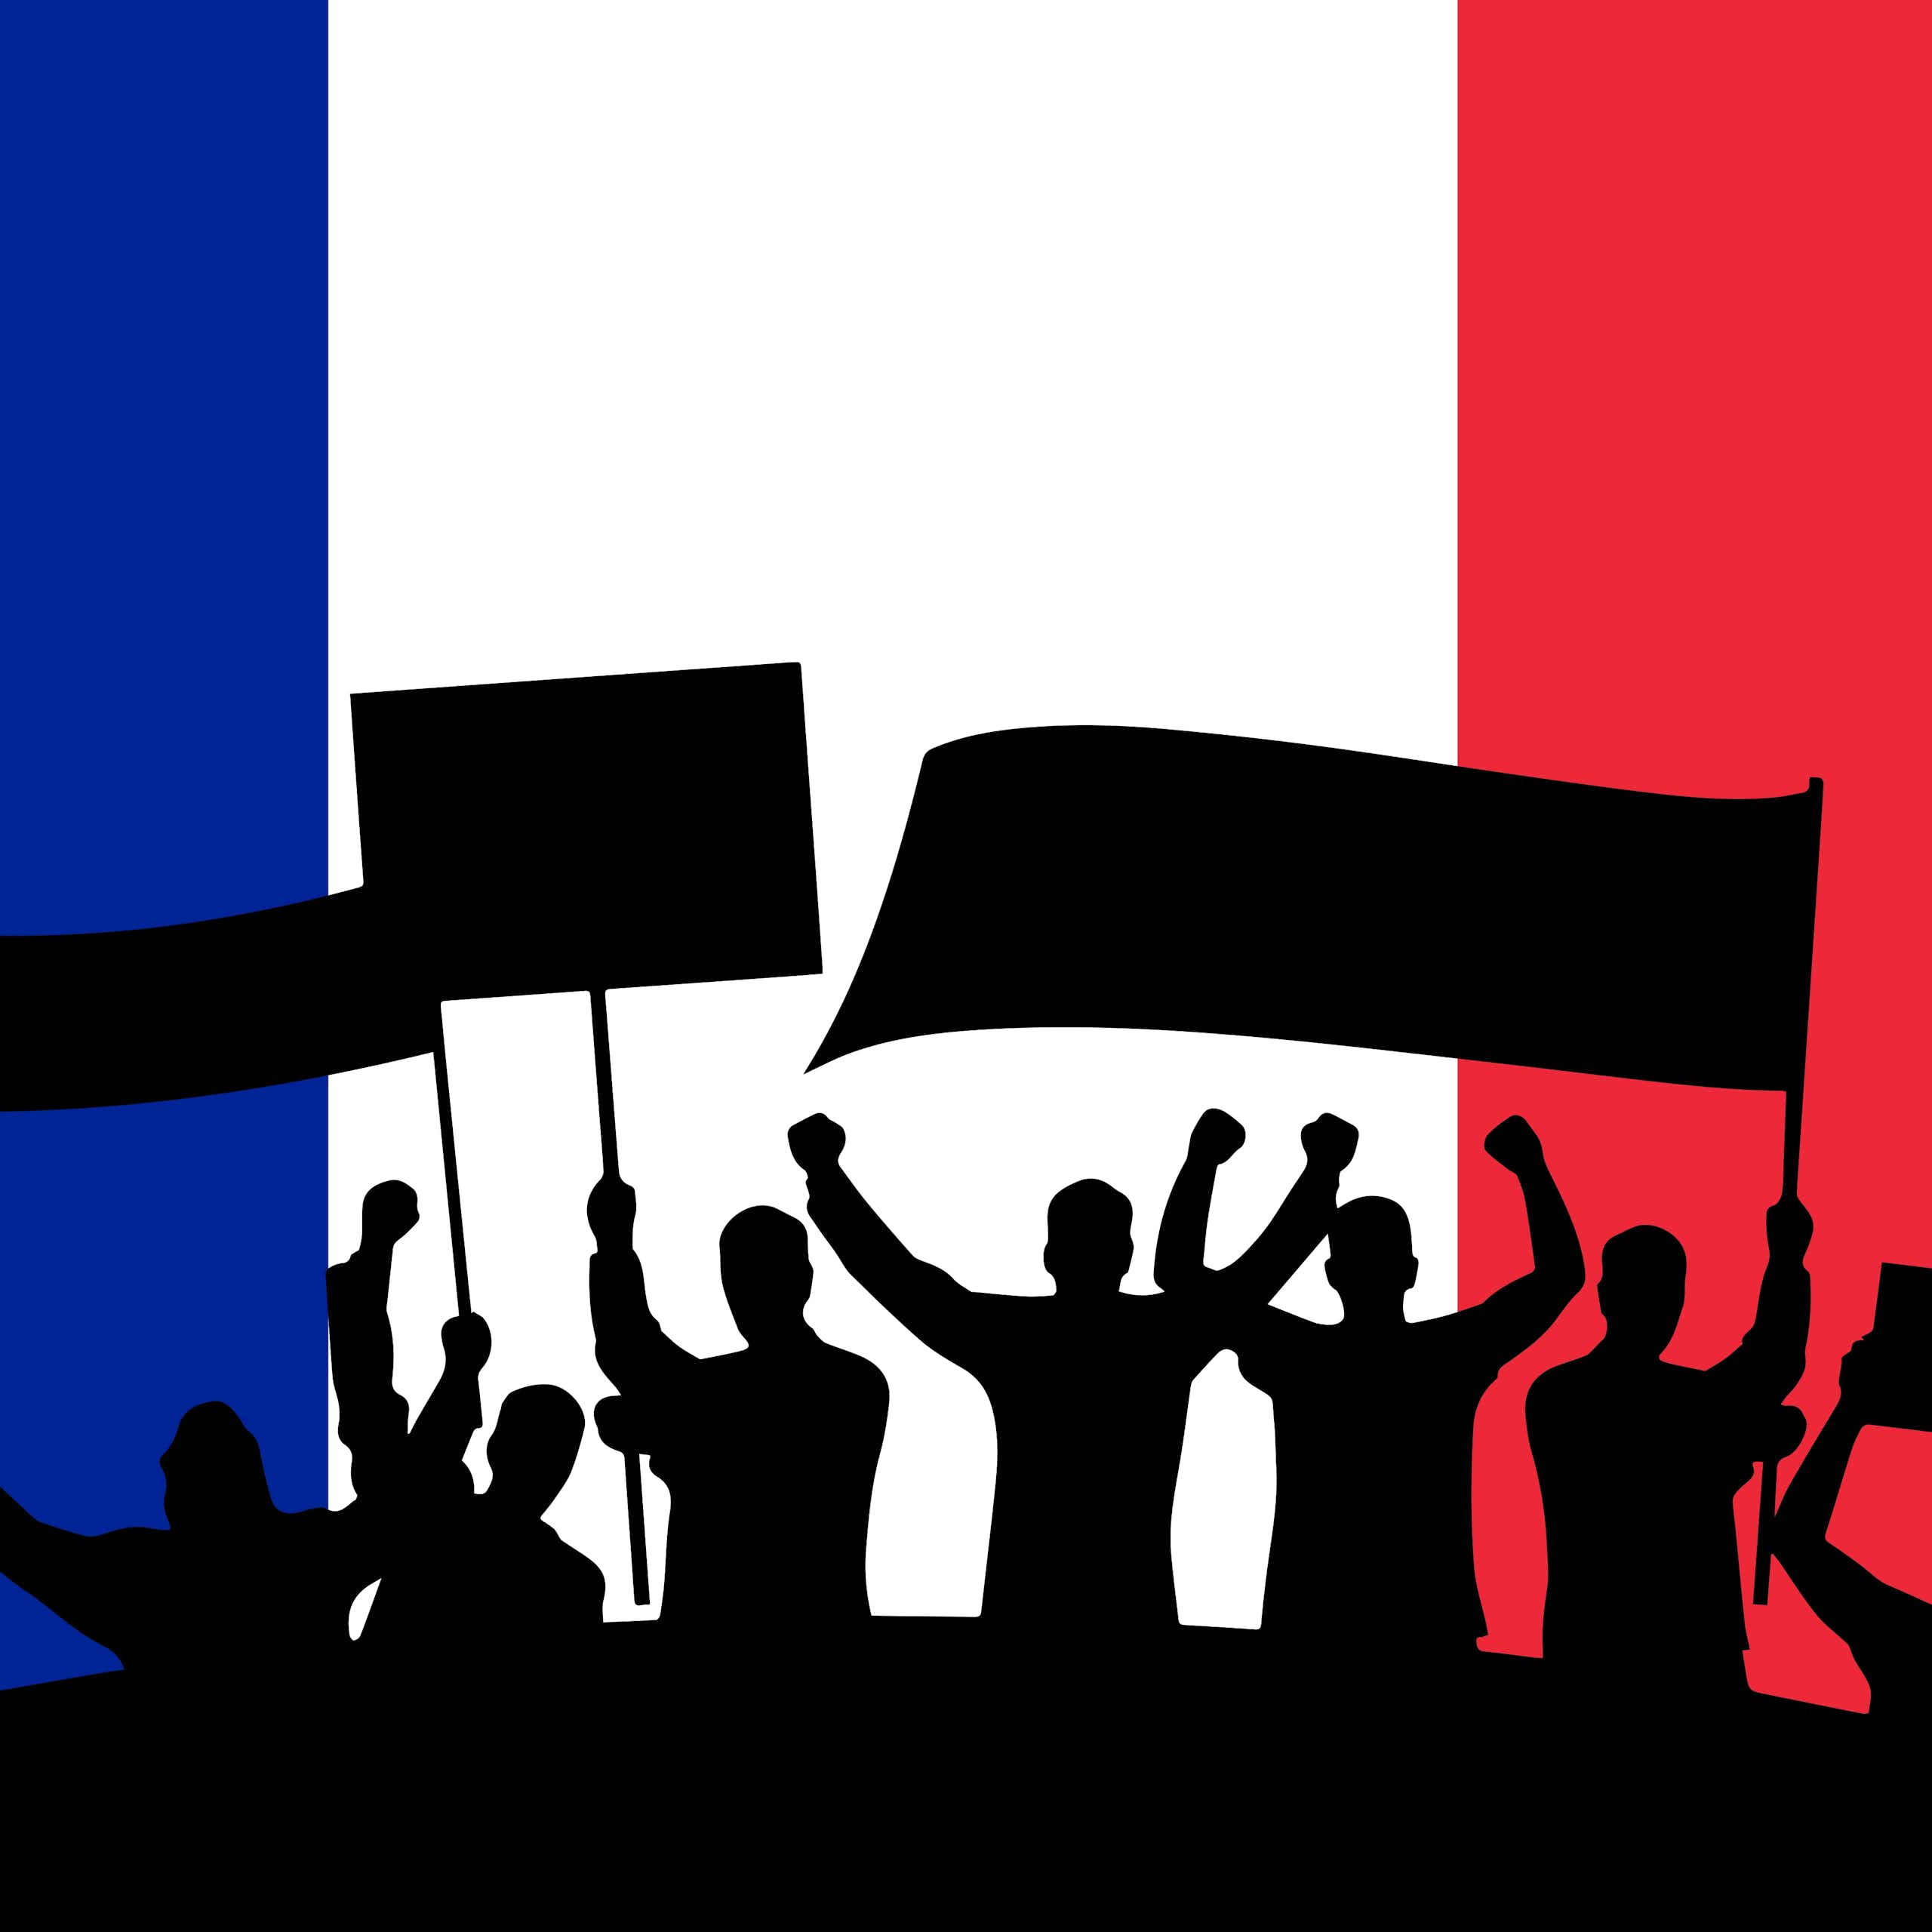 En France et ailleurs, ce que la dénonciation du populisme dit des démocraties représentatives actuelles